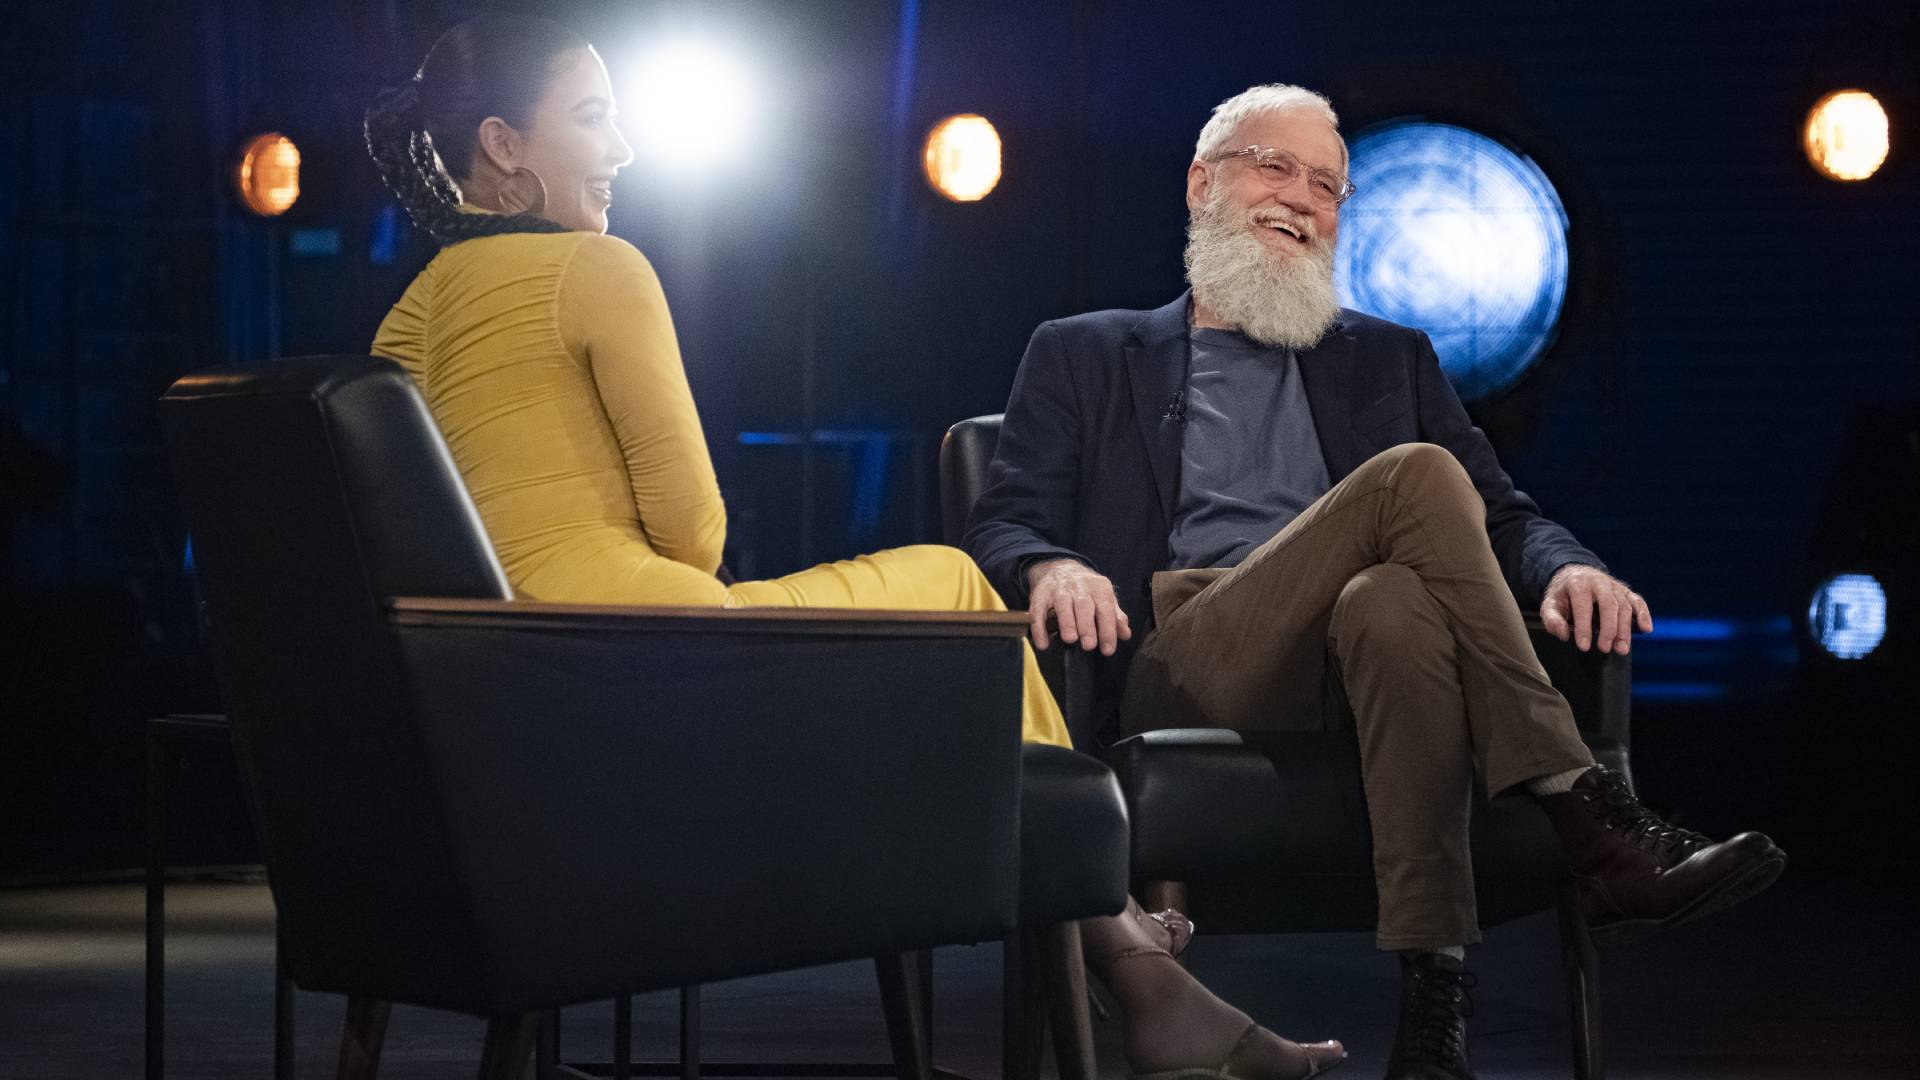 Primeiras imagens da 3ª temporada de ‘O próximo convidado dispensa apresentação com David Letterman’